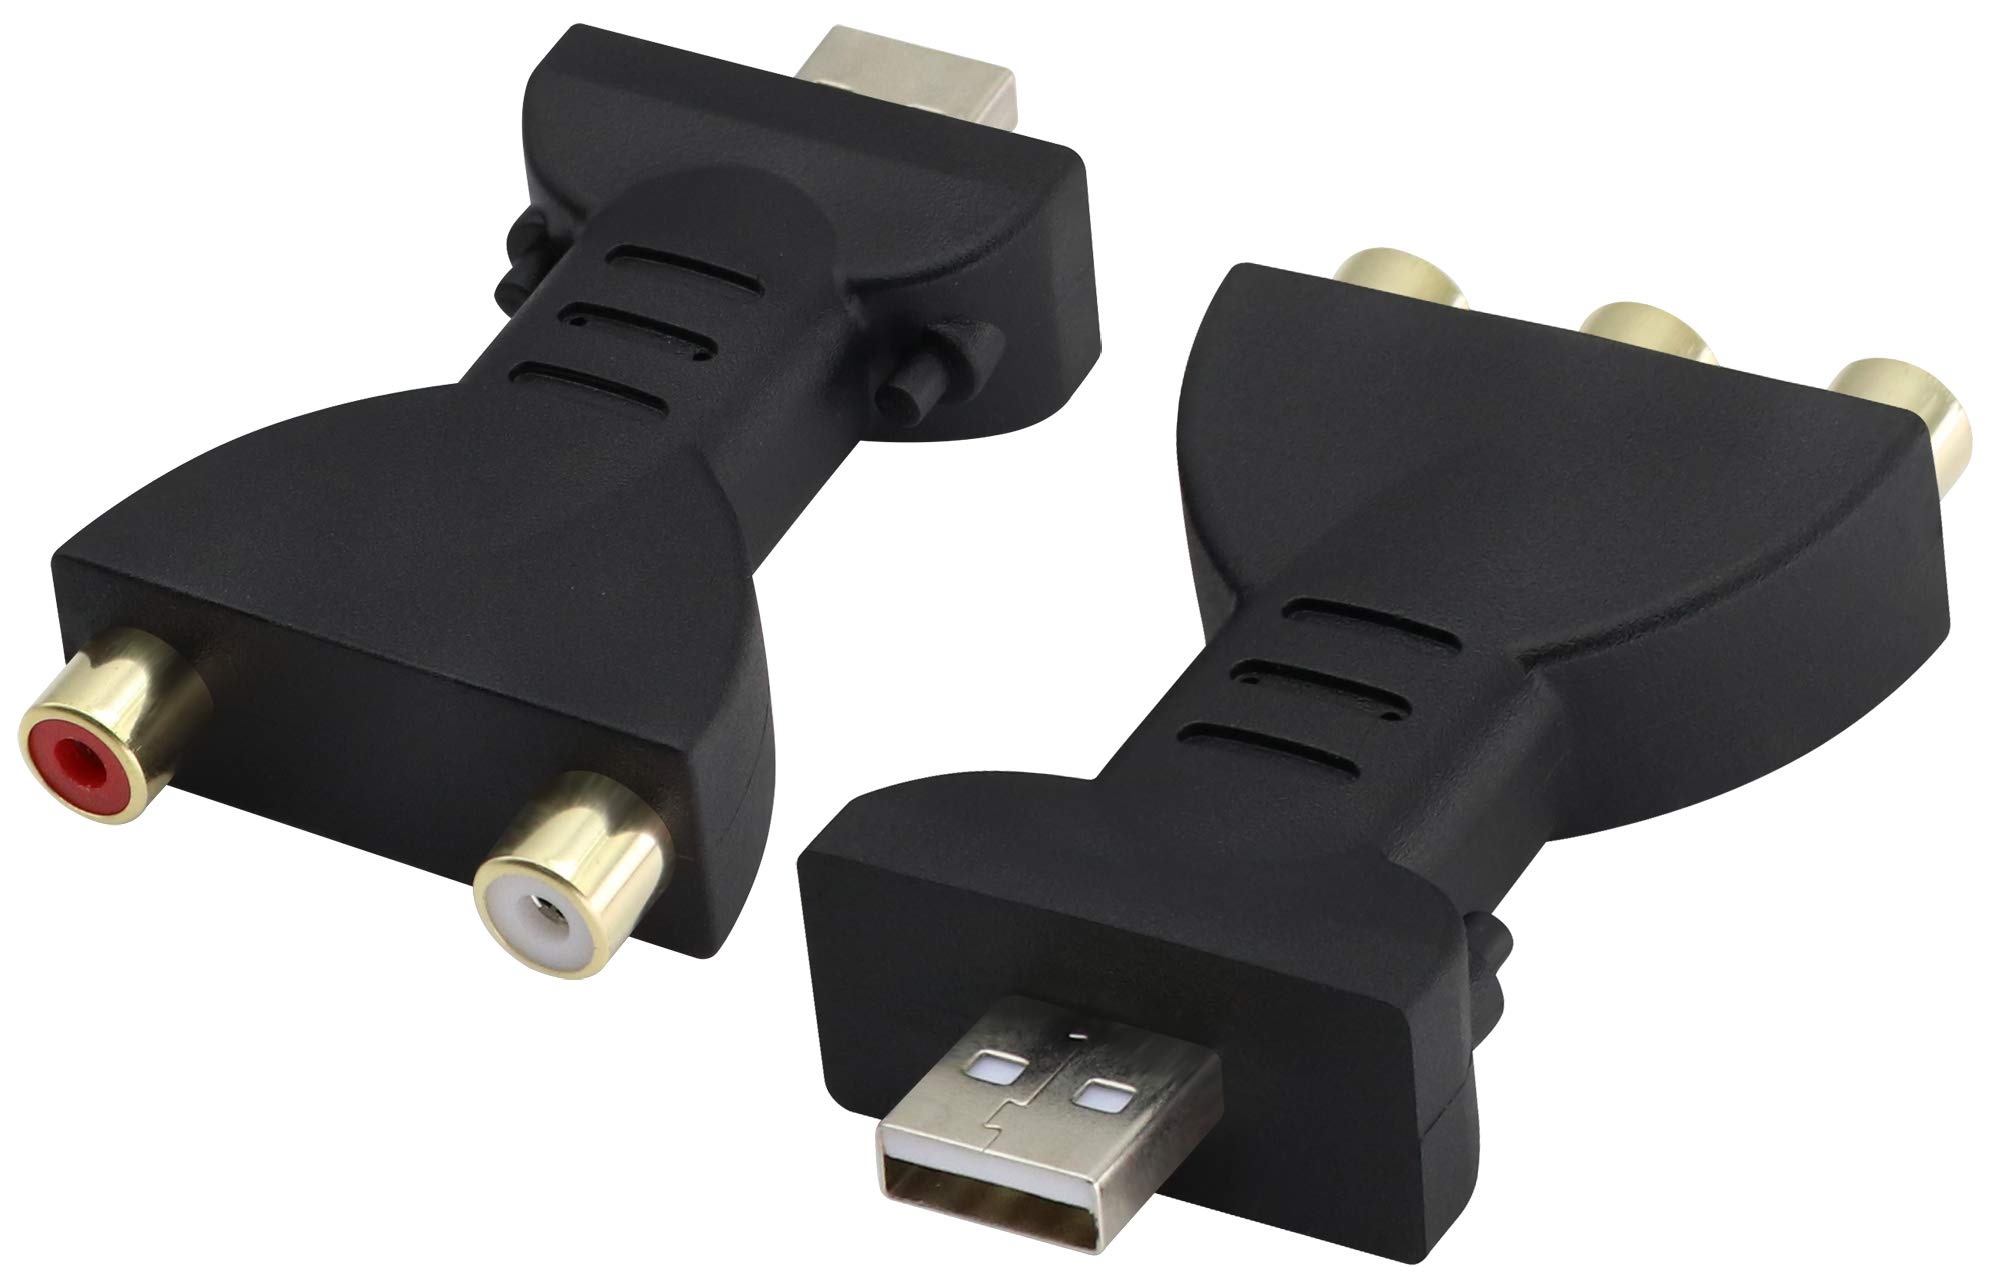 zdyCGTime 2 USB 2.0-Stecker auf 2/3RCA-Buchse Splitter Audio-Video AV Composite Adapter, 1080P AV auf USB-Kabel, geeignet für PC, Laptop, HDTV, DVD, Projektor und andere Geräte.